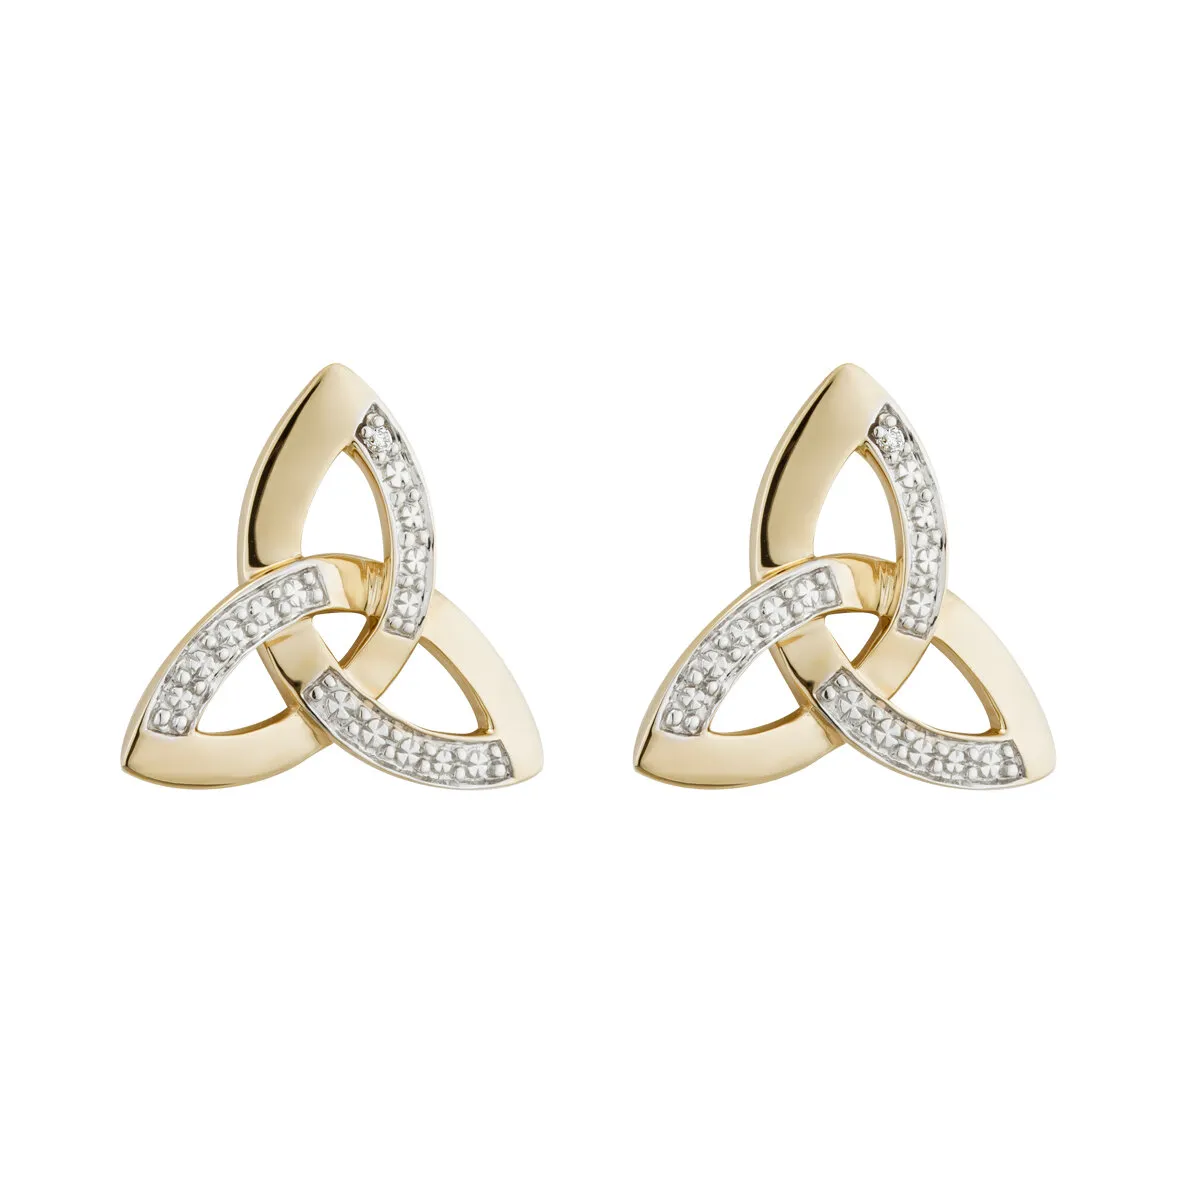 Diamond Trinity Knot Stud Earrings